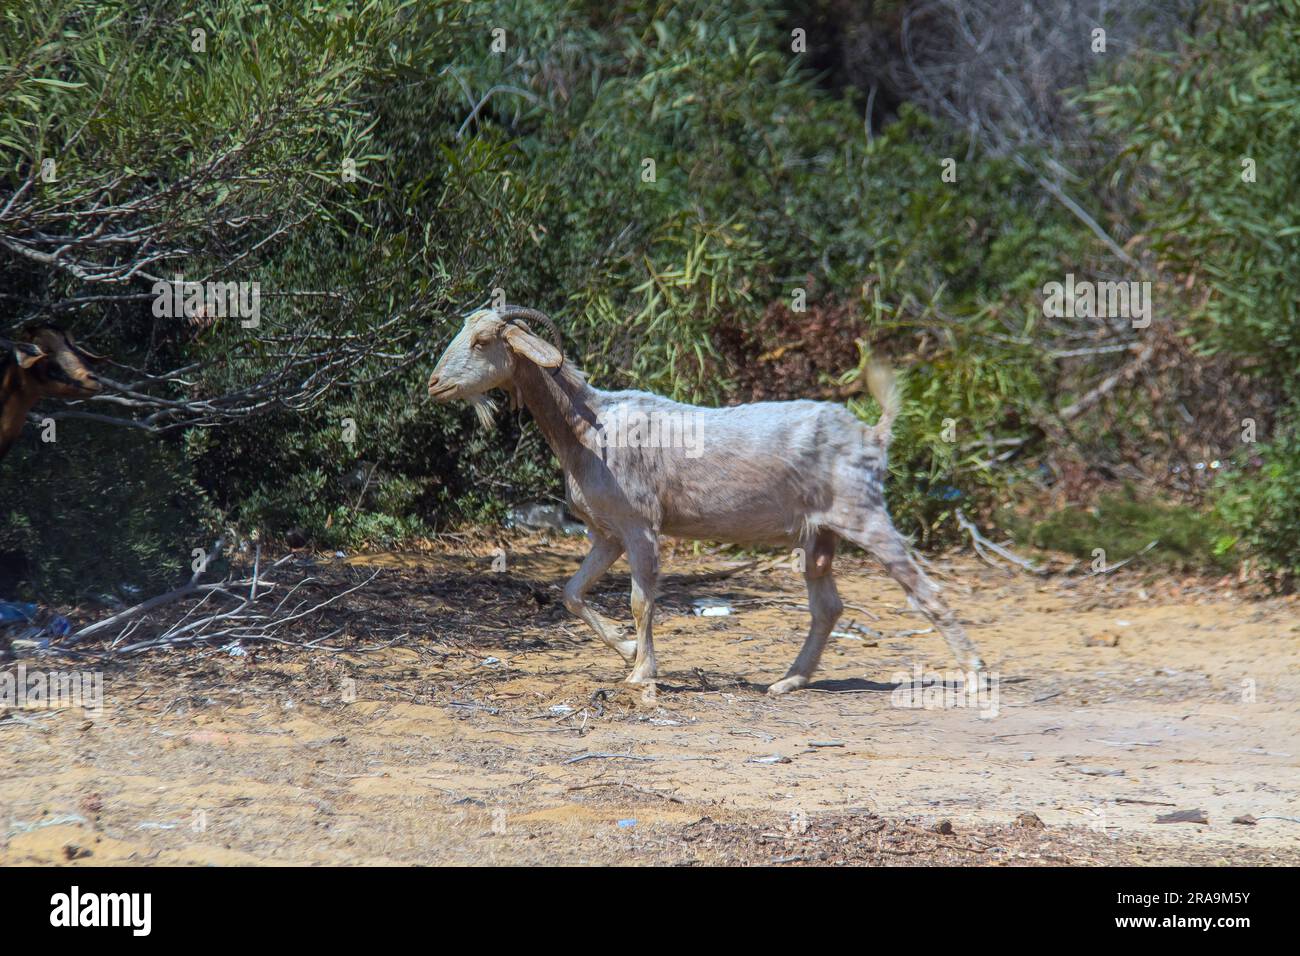 Chèvre sahélien : exploration de la race unique dans son habitat naturel Banque D'Images